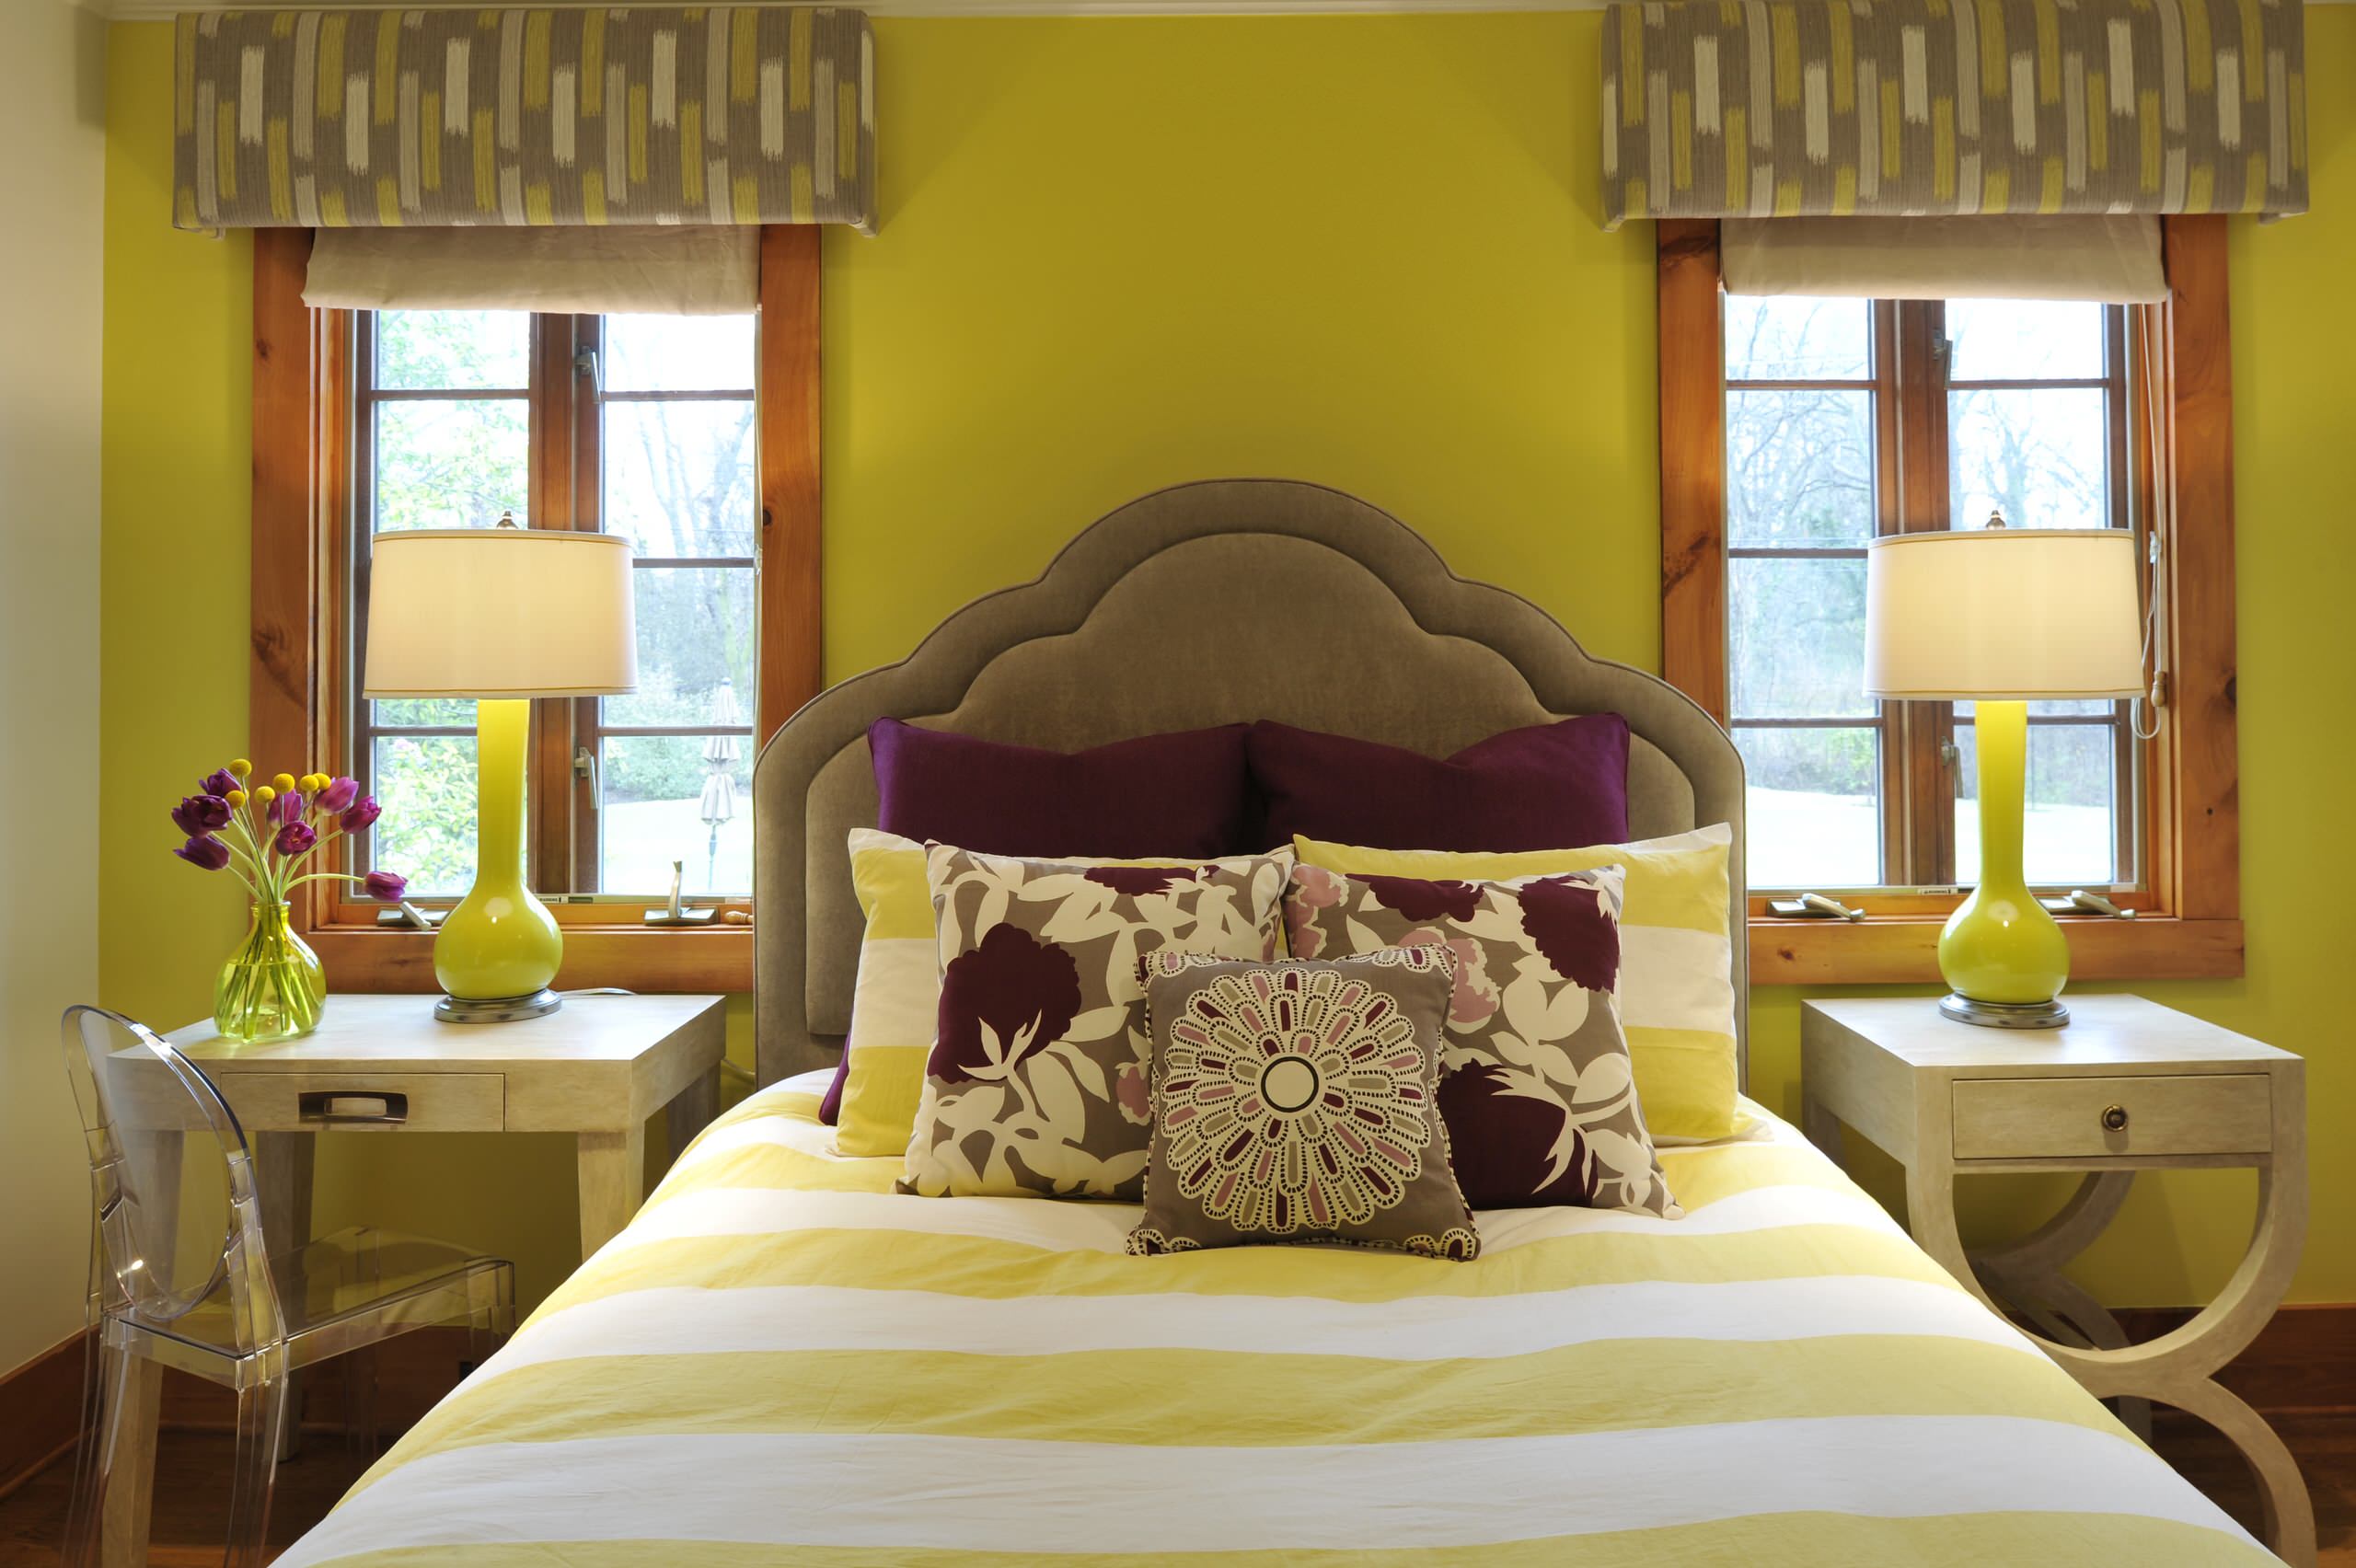 Горчичная кровать. Спальня в горчичном цвете. Горчичные шторы в спальне. Спальня в желтых тонах. Горчичные шторы в интерьере.